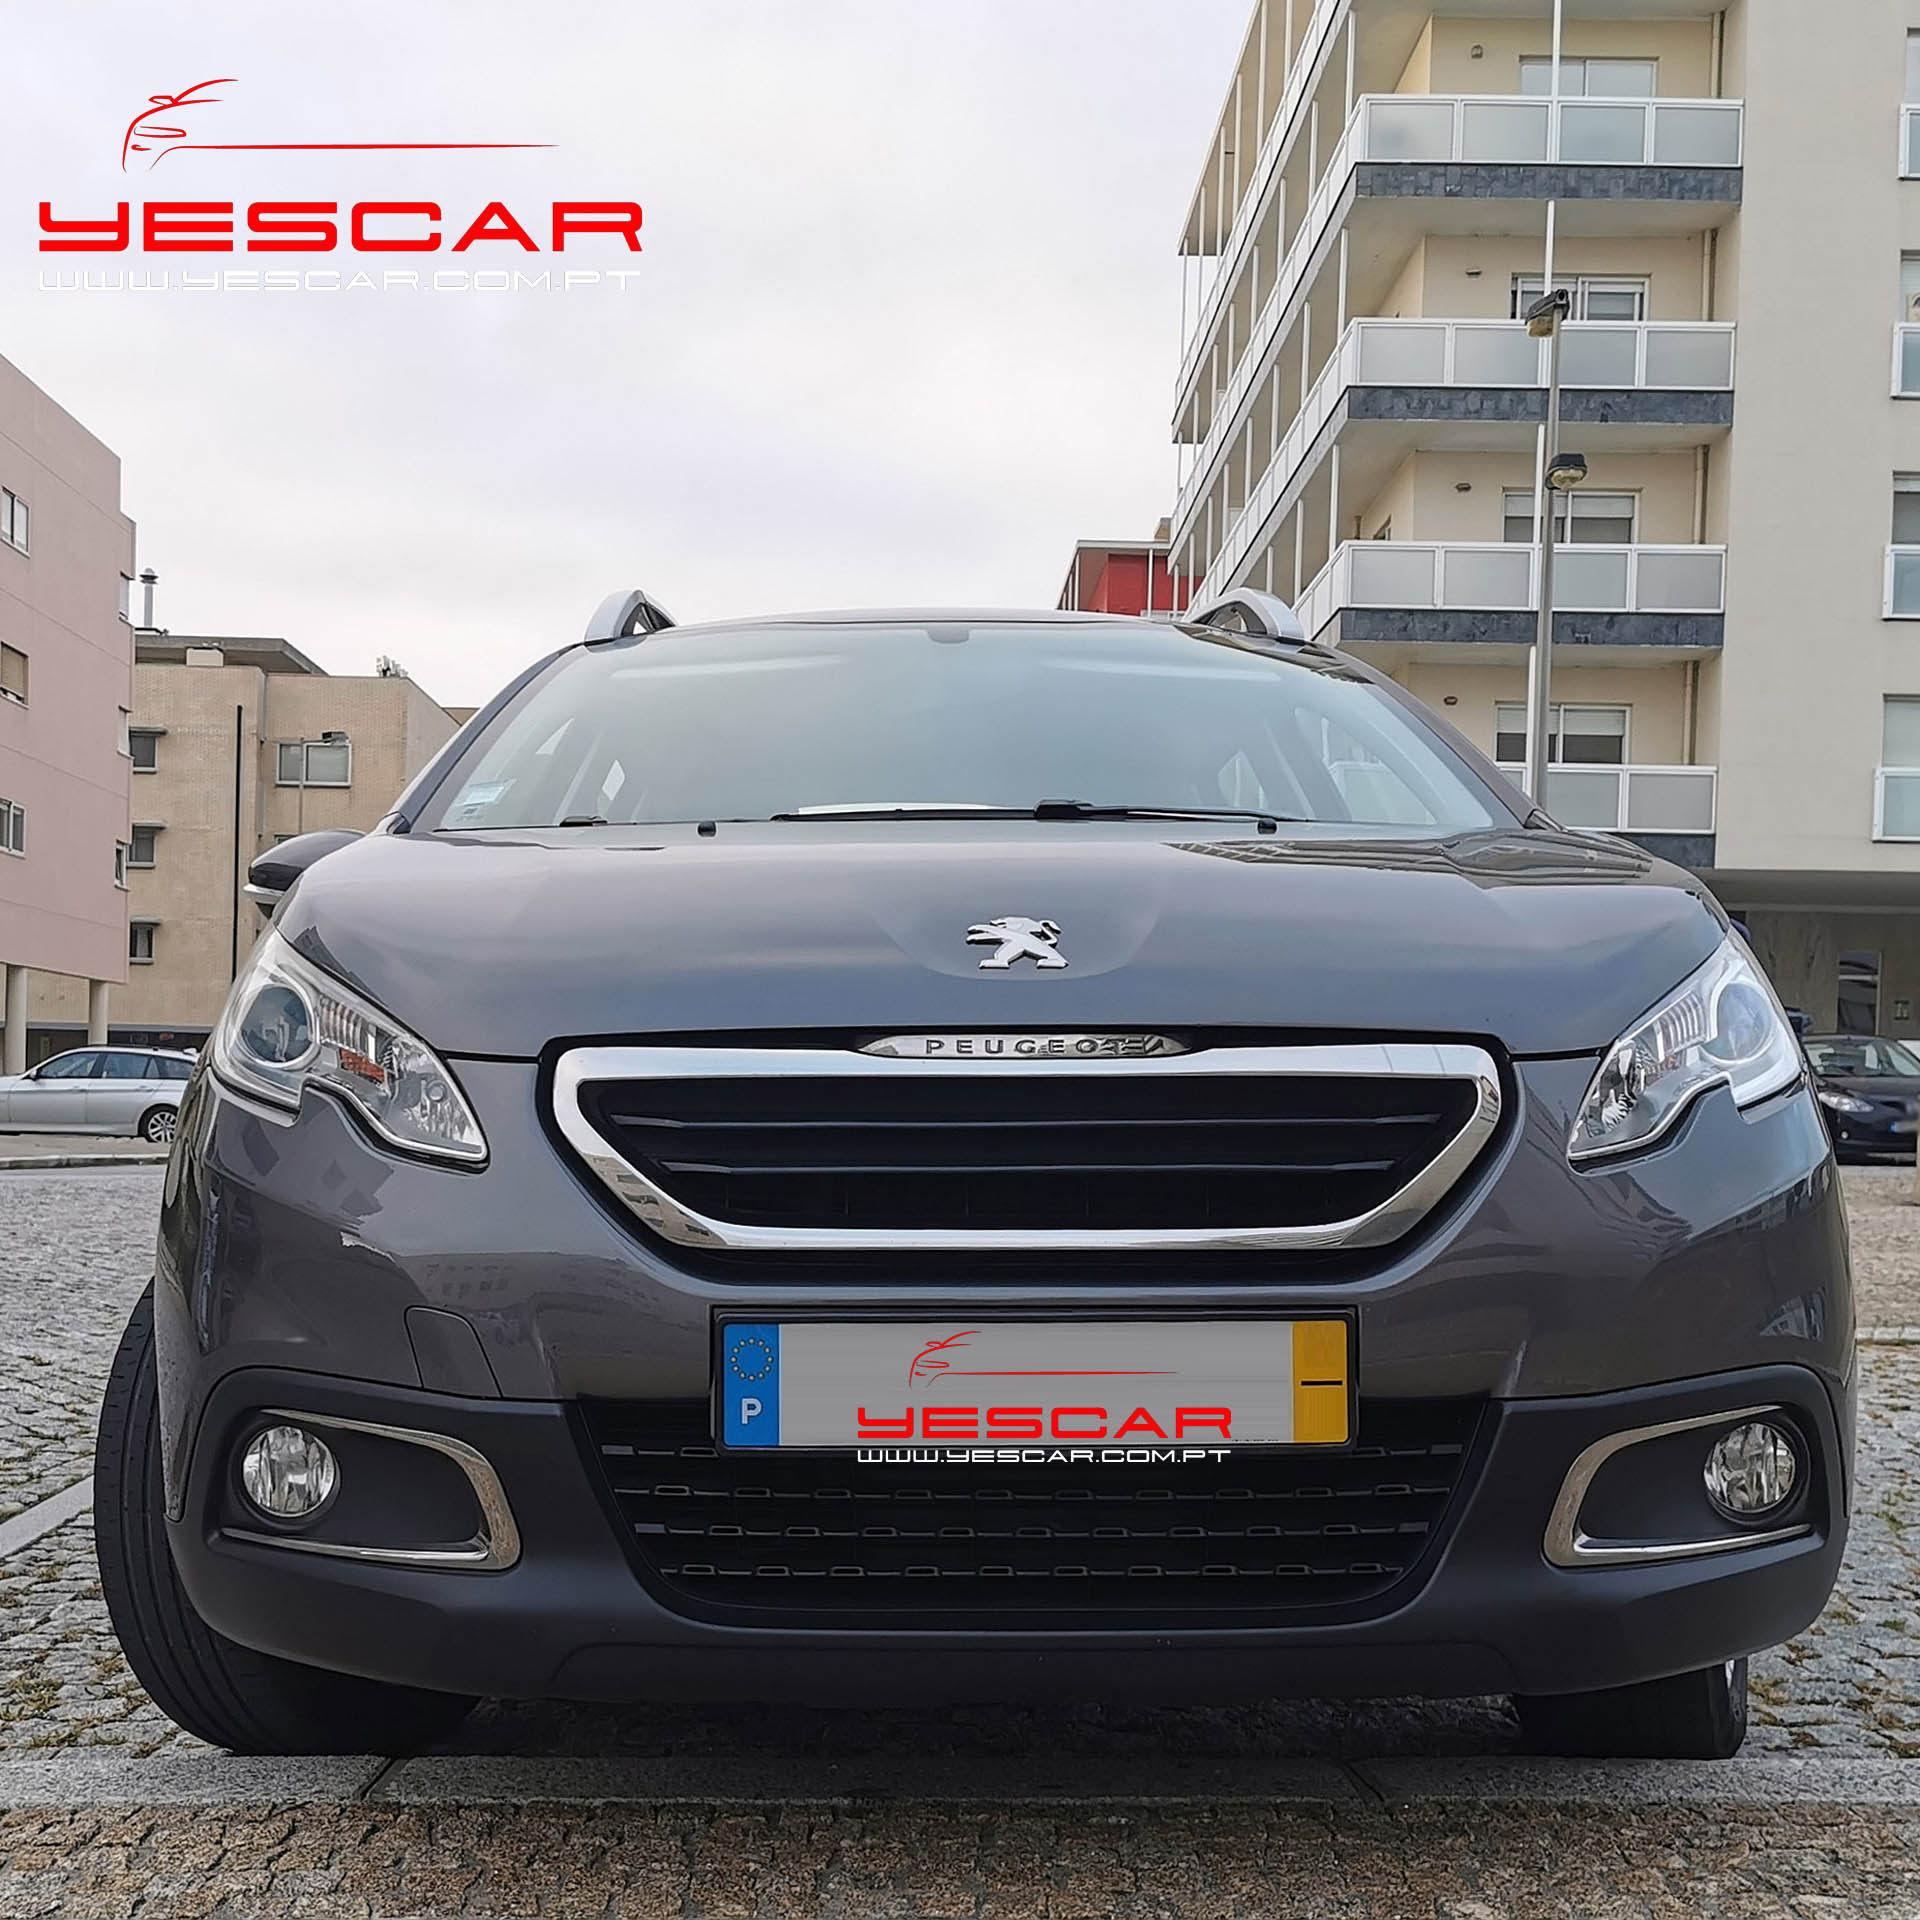 Peugeot 2008 eHDI #YESCAR Automóveis - o seu stand de viaturas premium selecionadas, na Rua António Enes nº 51 - Porto